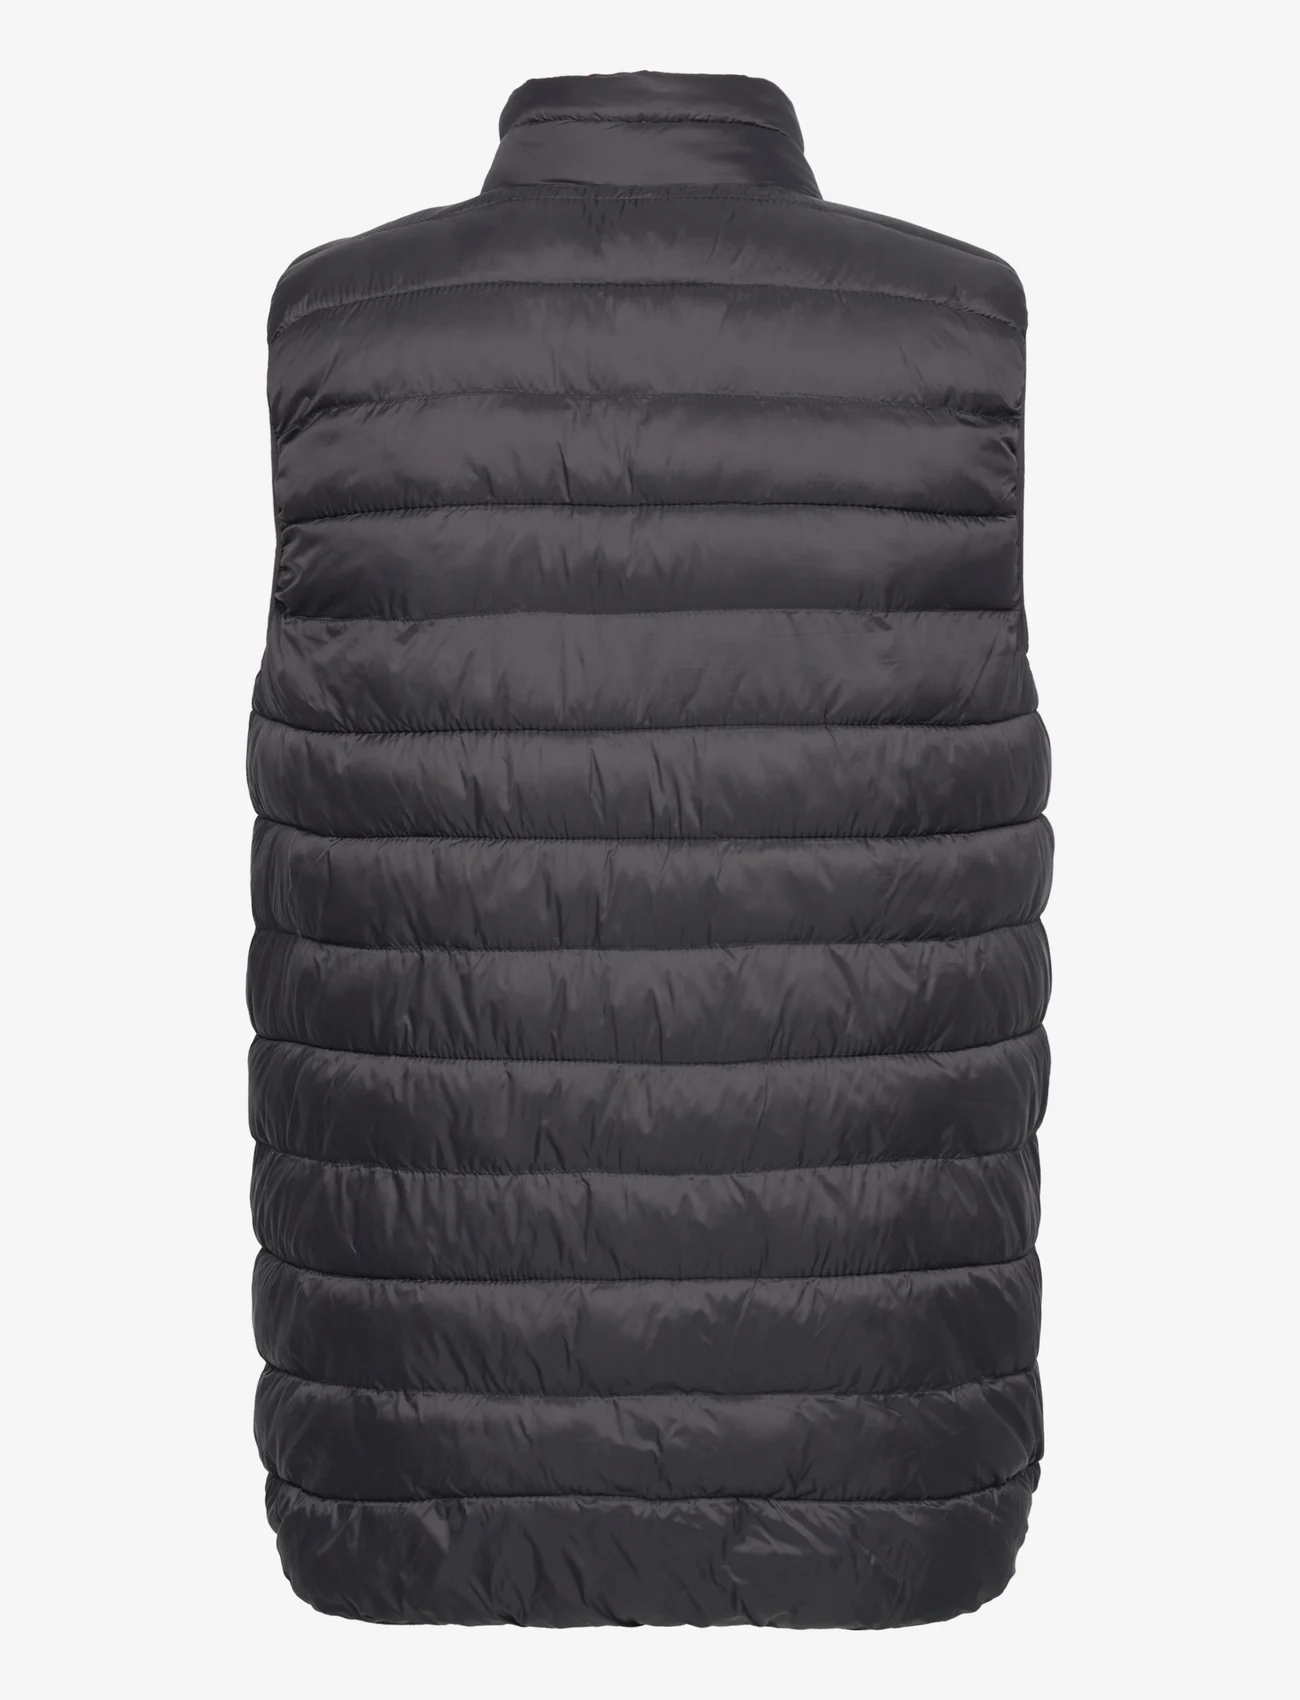 Kronstadt - Bo light vest - spring jackets - black - 1